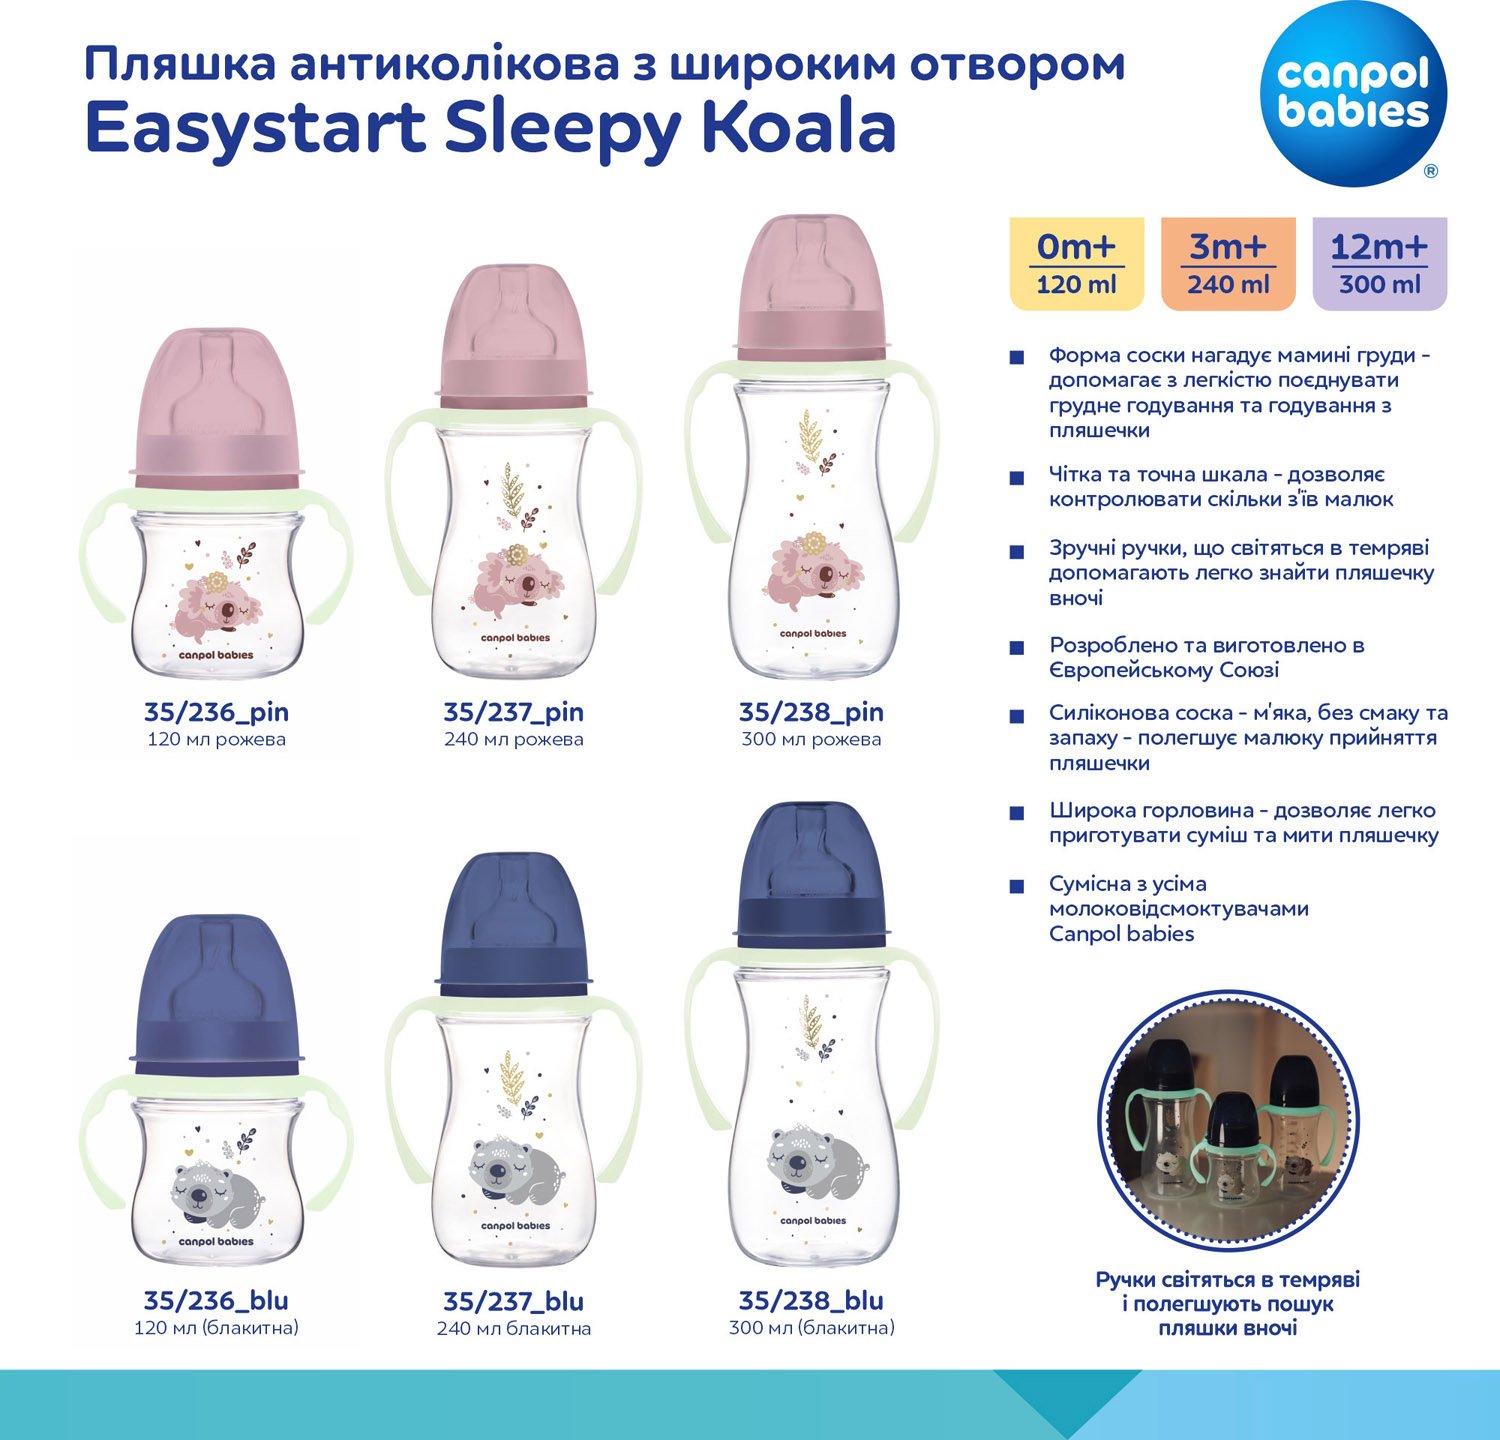 Бутылочка для кормления Canpol babies Easystart Sleepy Koala, антиколиковая, 300 мл, розовая (35/238_pin) - фото 11